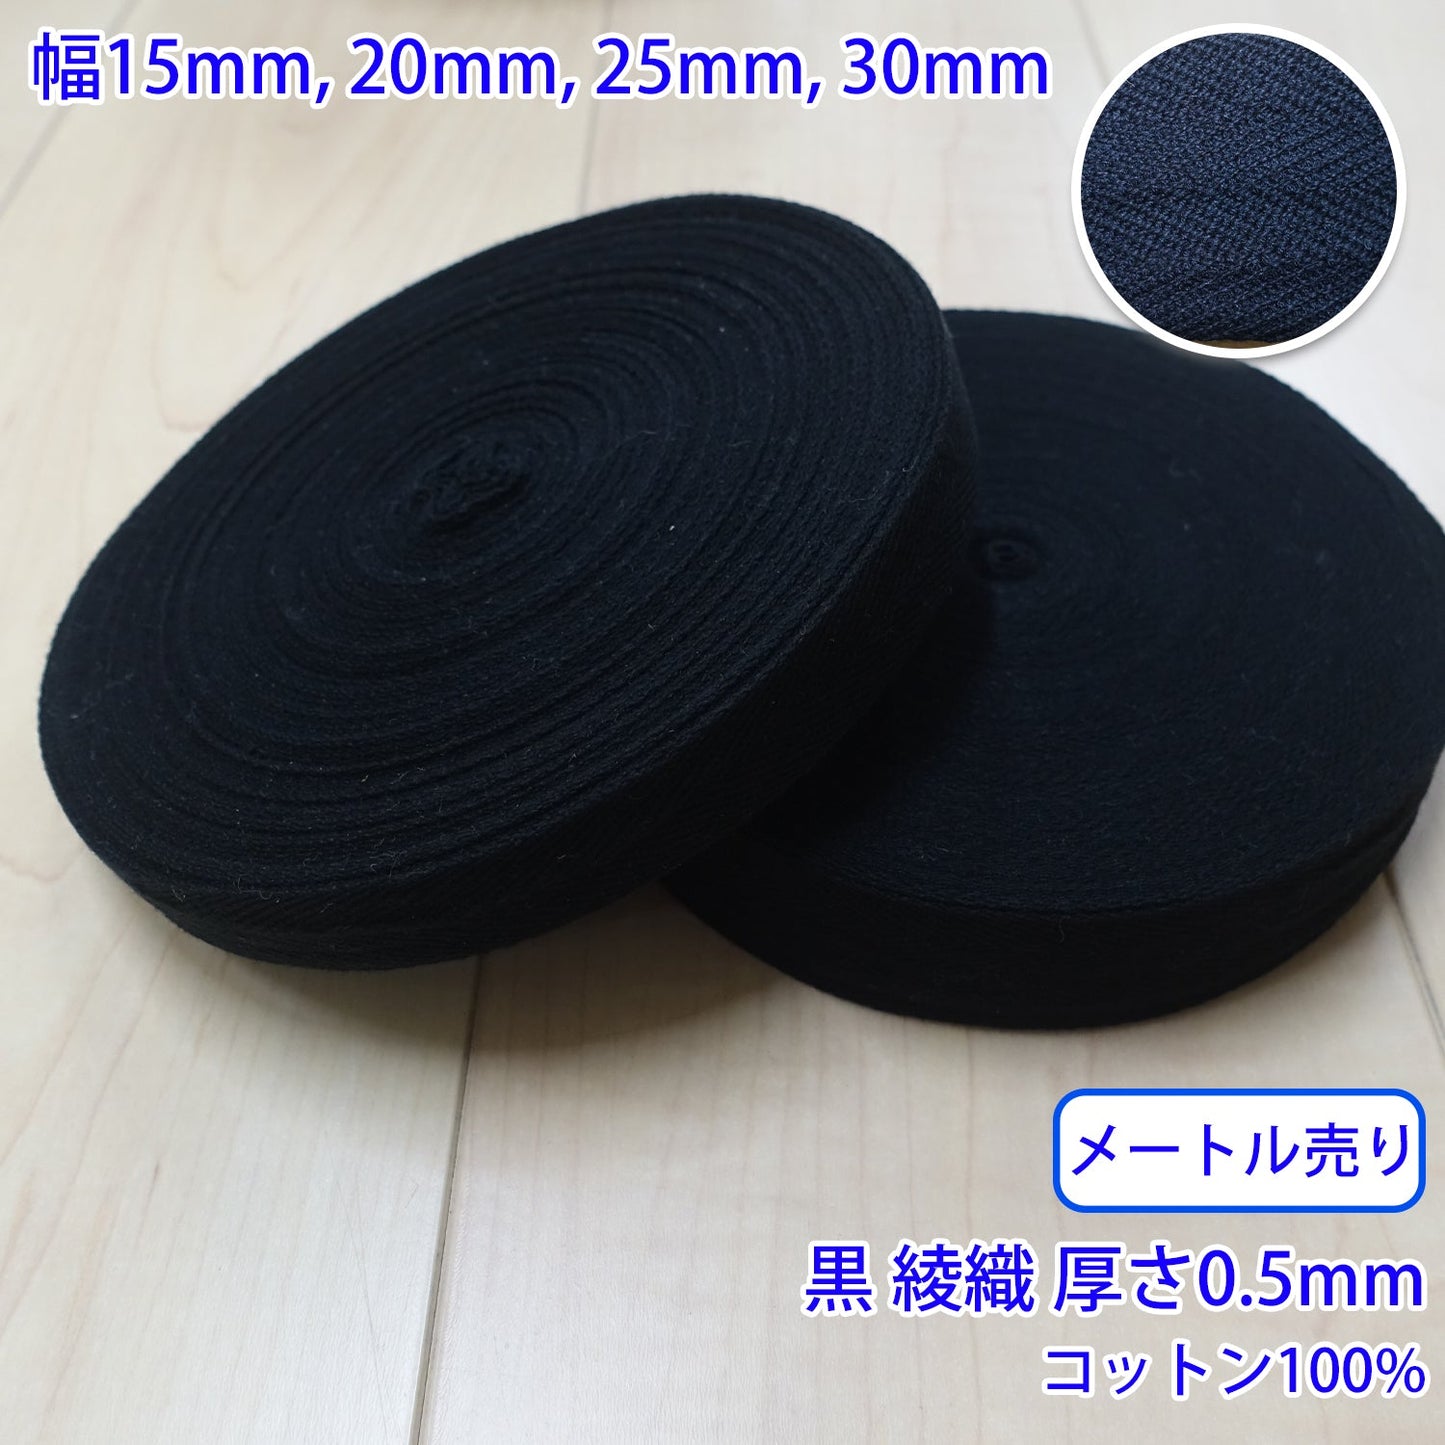 【メートル売り】 ヘリンボーン / NO1901 綾織 黒 コットン100%(厚さ約0.5mm) (入園・入学準備に、バッグの持ち手として、洋服のワンポイントに)